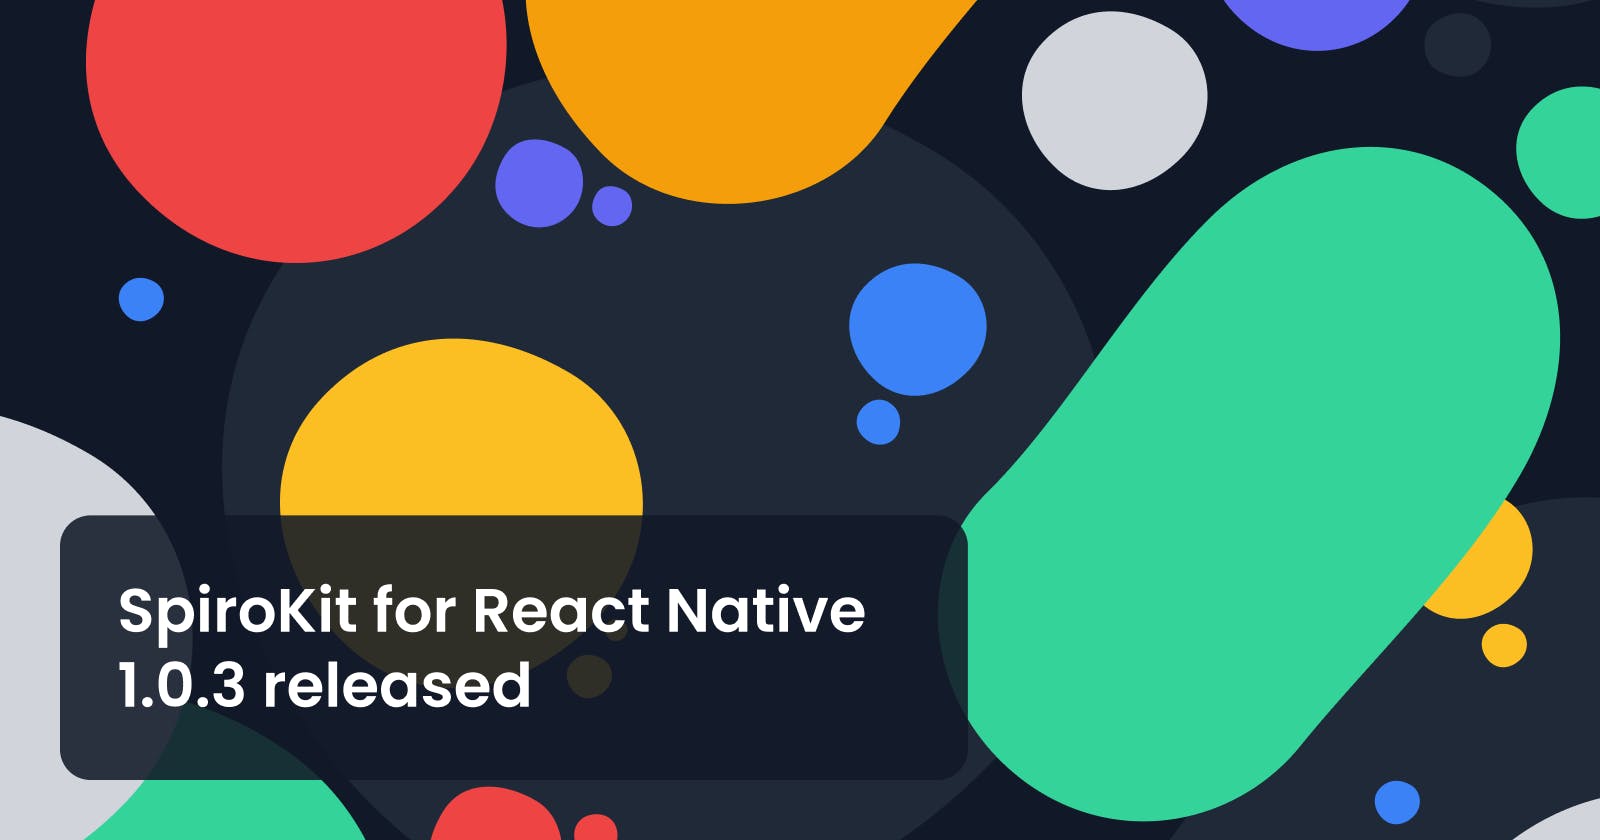 SpiroKit for React Native 1.0.3 released